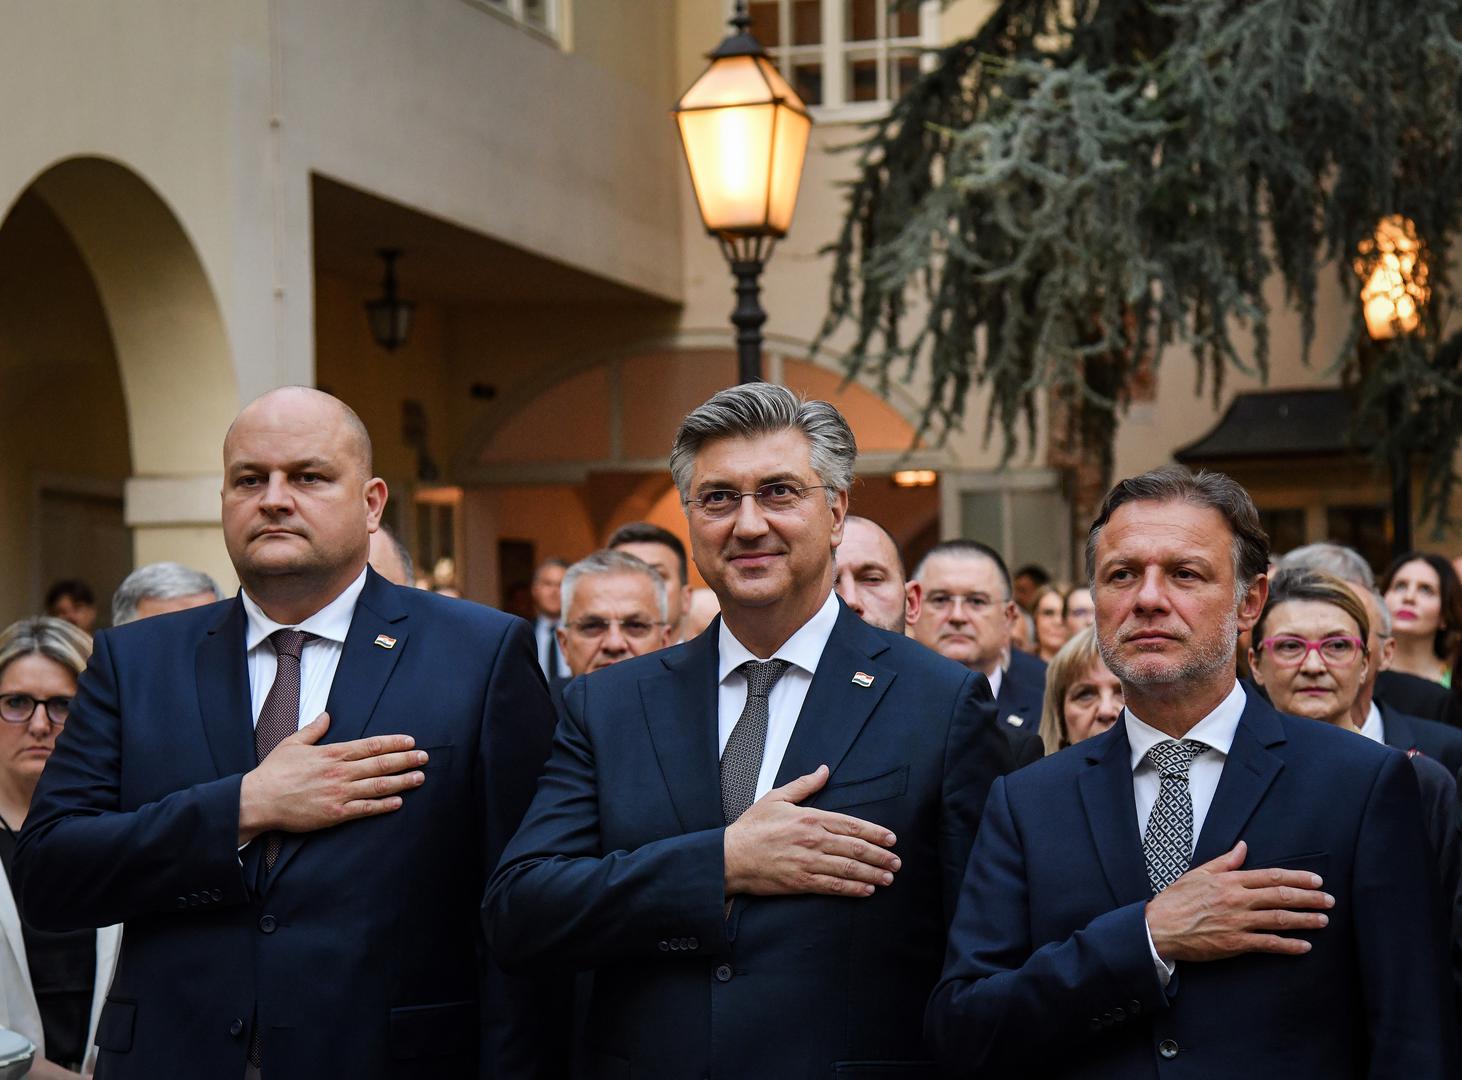 Plenković je tom prilikom poručio da je članstvo u EU-u promijenilo nabolje Hrvatsku, koja ubrzanim koracima hvata priključak s članicama koje su duže u Uniji. 